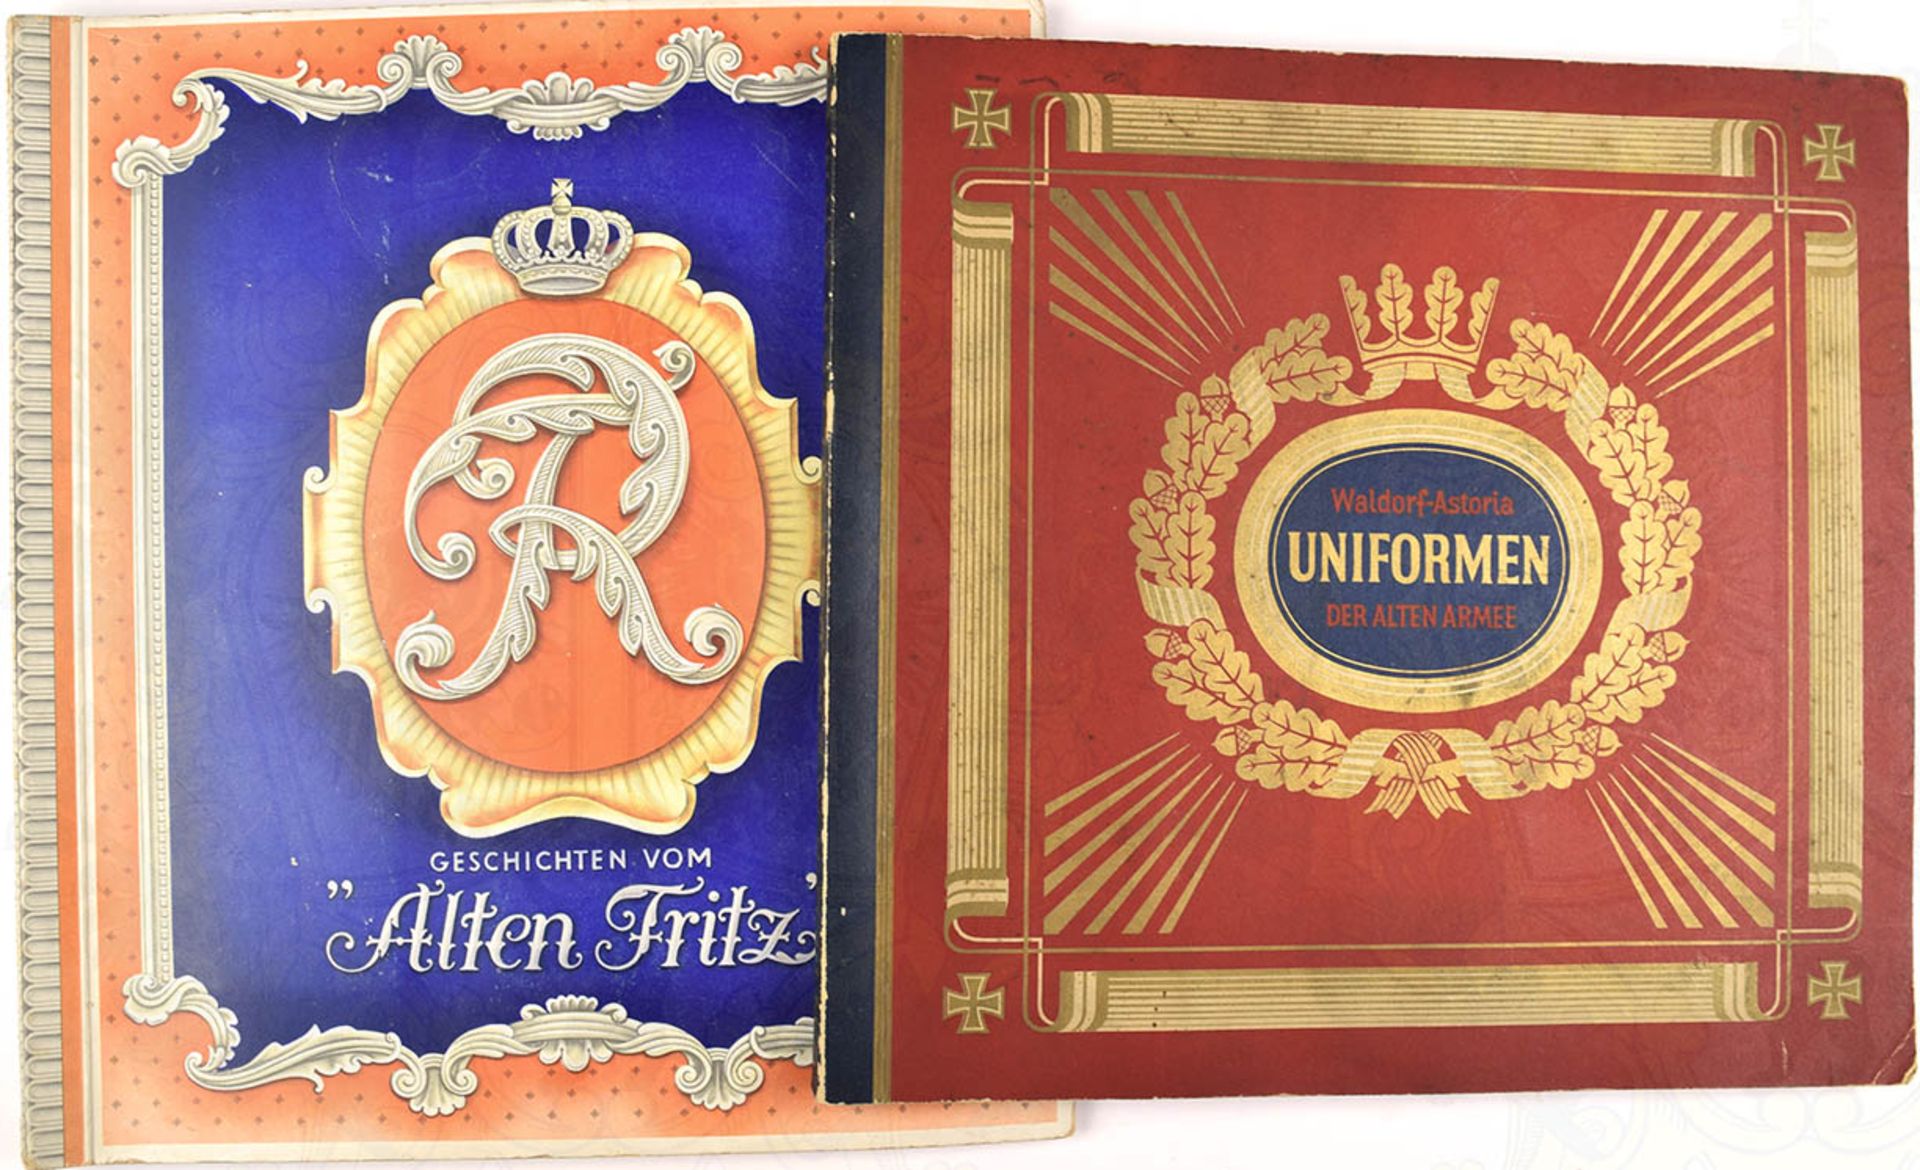 2 TITEL: "Geschichten vom Alten Fritz", Garbaty 1933, 250 farbige Bilder; "Uniformen der alten